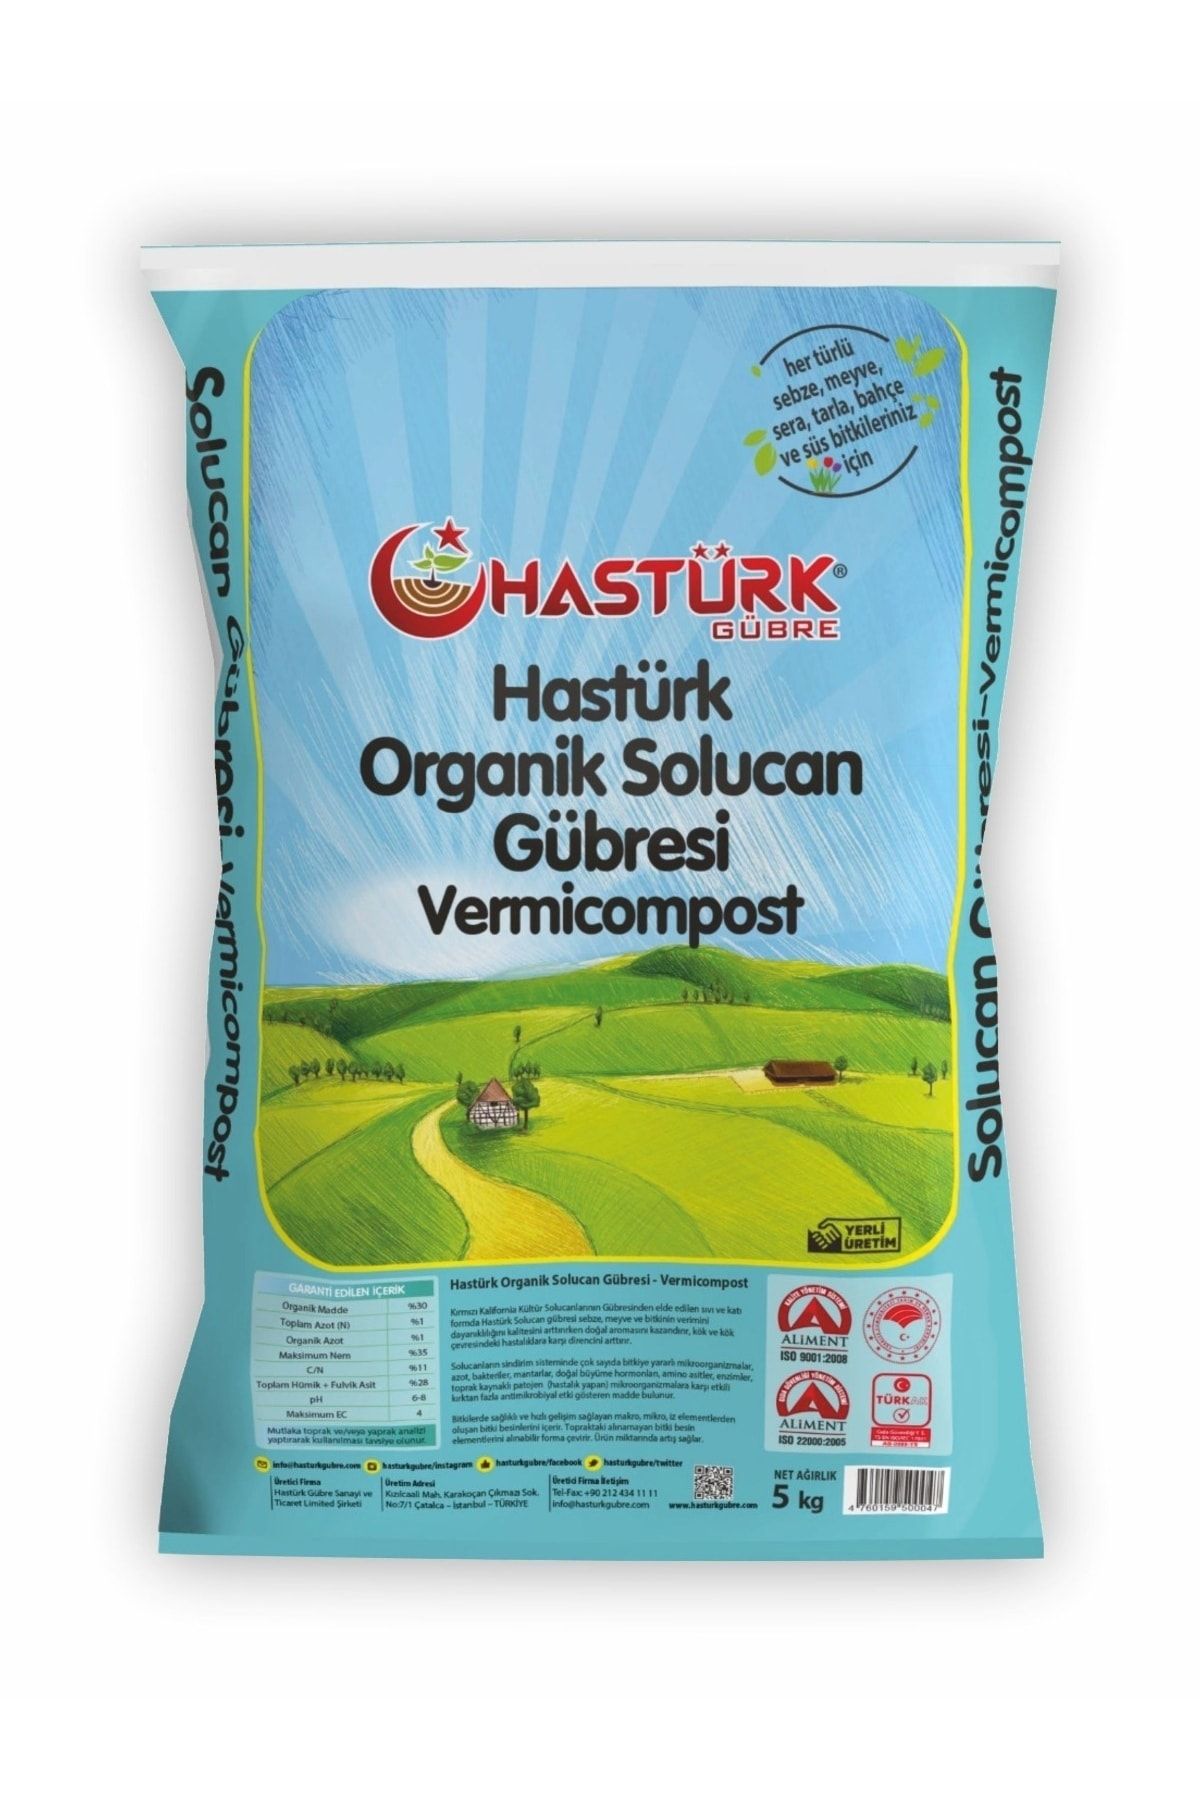 Hastürk Gübre Hastürk %100 Organik Solucan Gübresi 5 Kg.